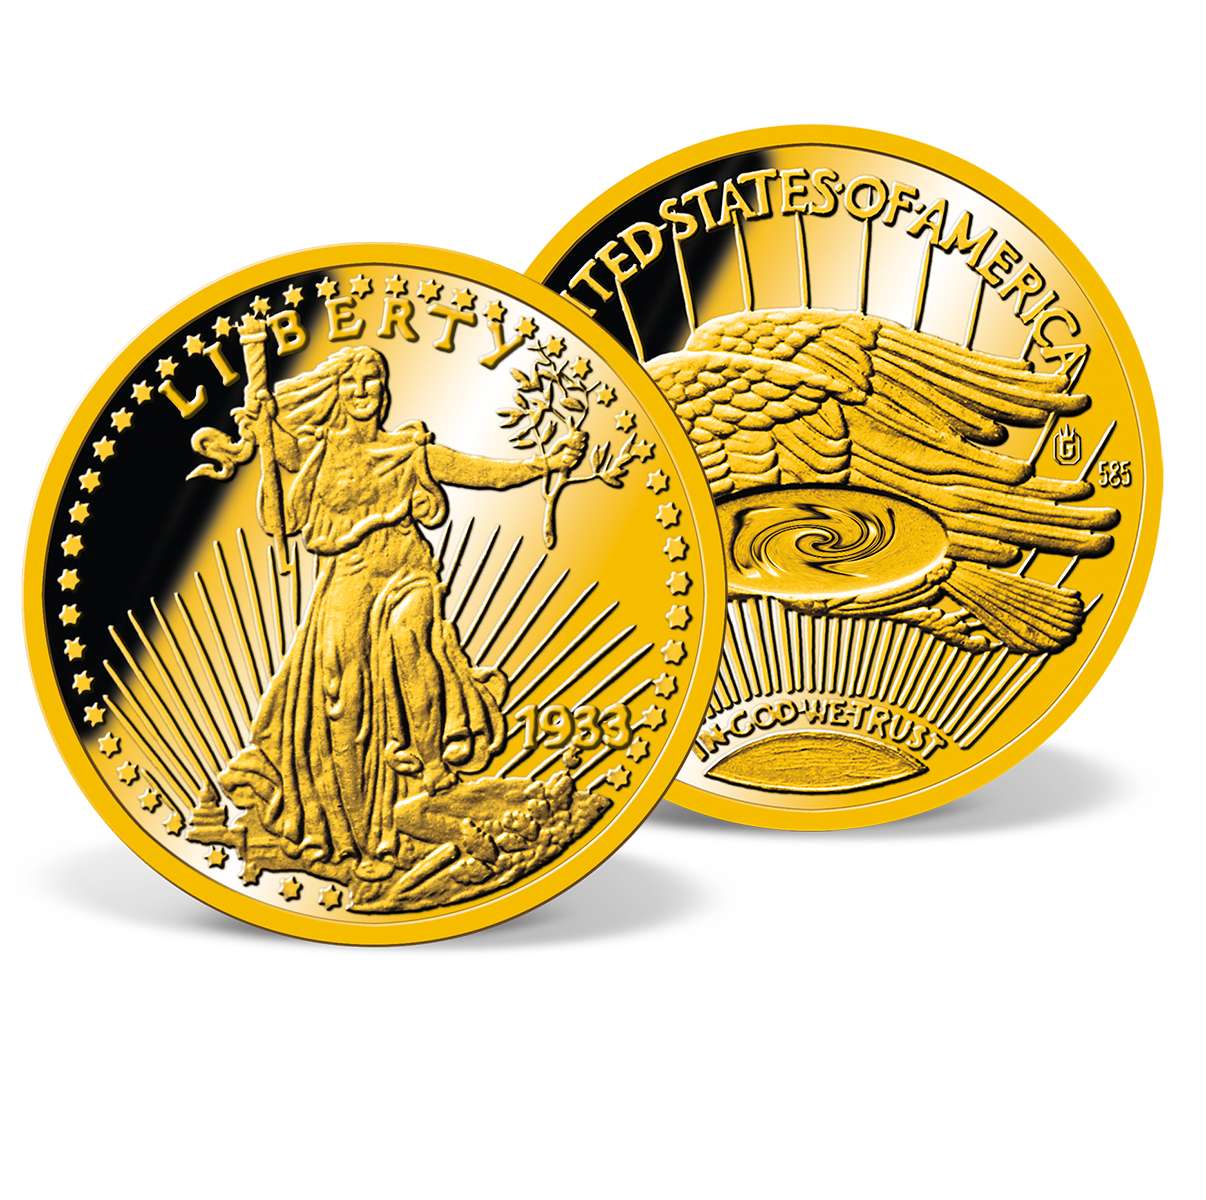 1933 Double Eagle Gold Coin - Replica